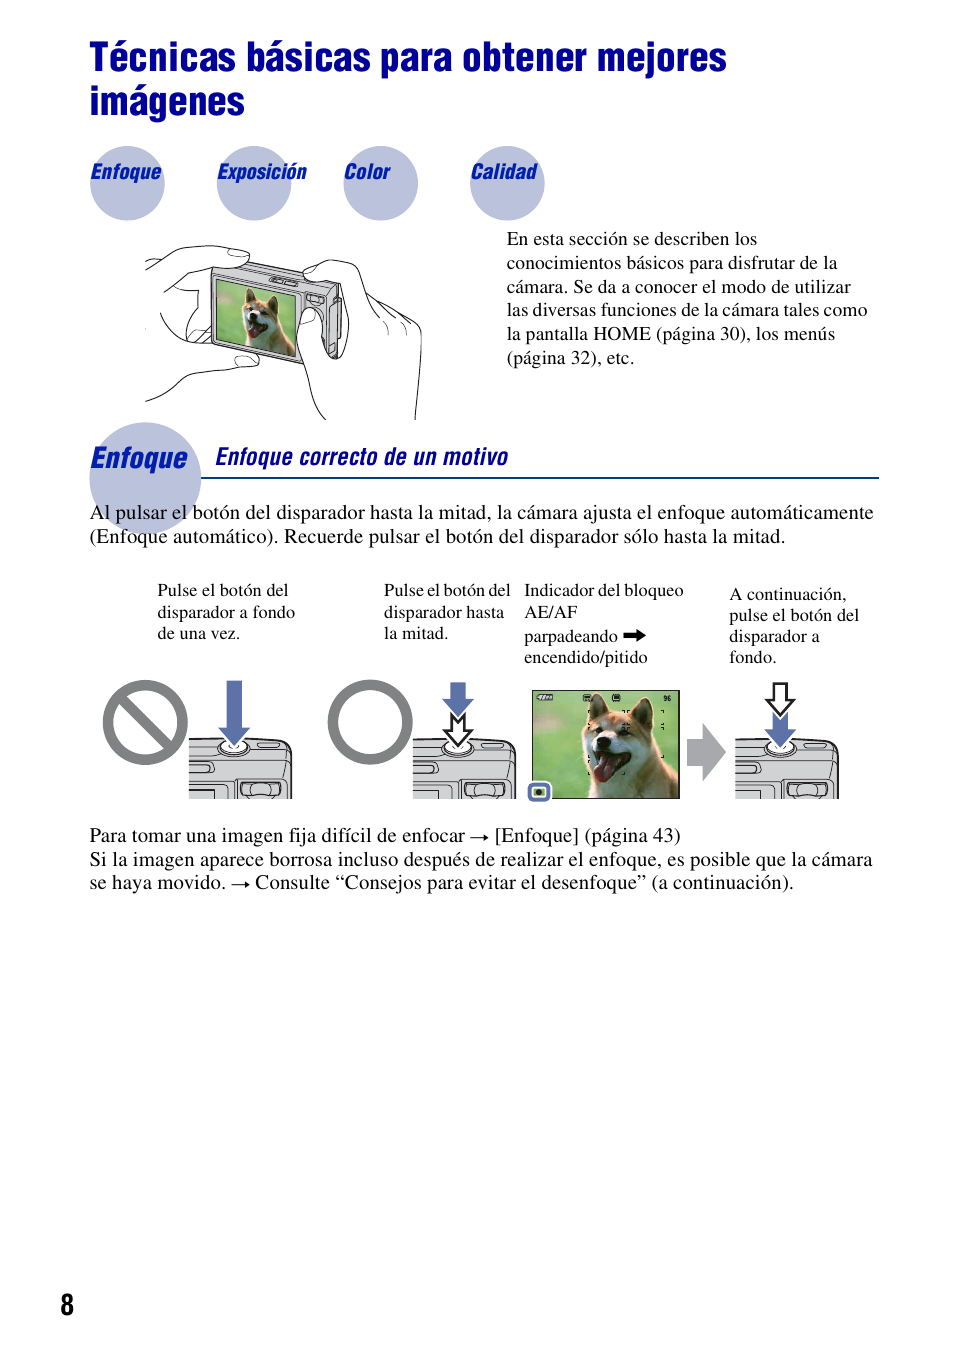 Técnicas básicas para obtener mejores imágenes, Enfoque, Enfoque – enfoque correcto de un motivo | Sony DSC-T100 Manual del usuario | Página 8 / 123